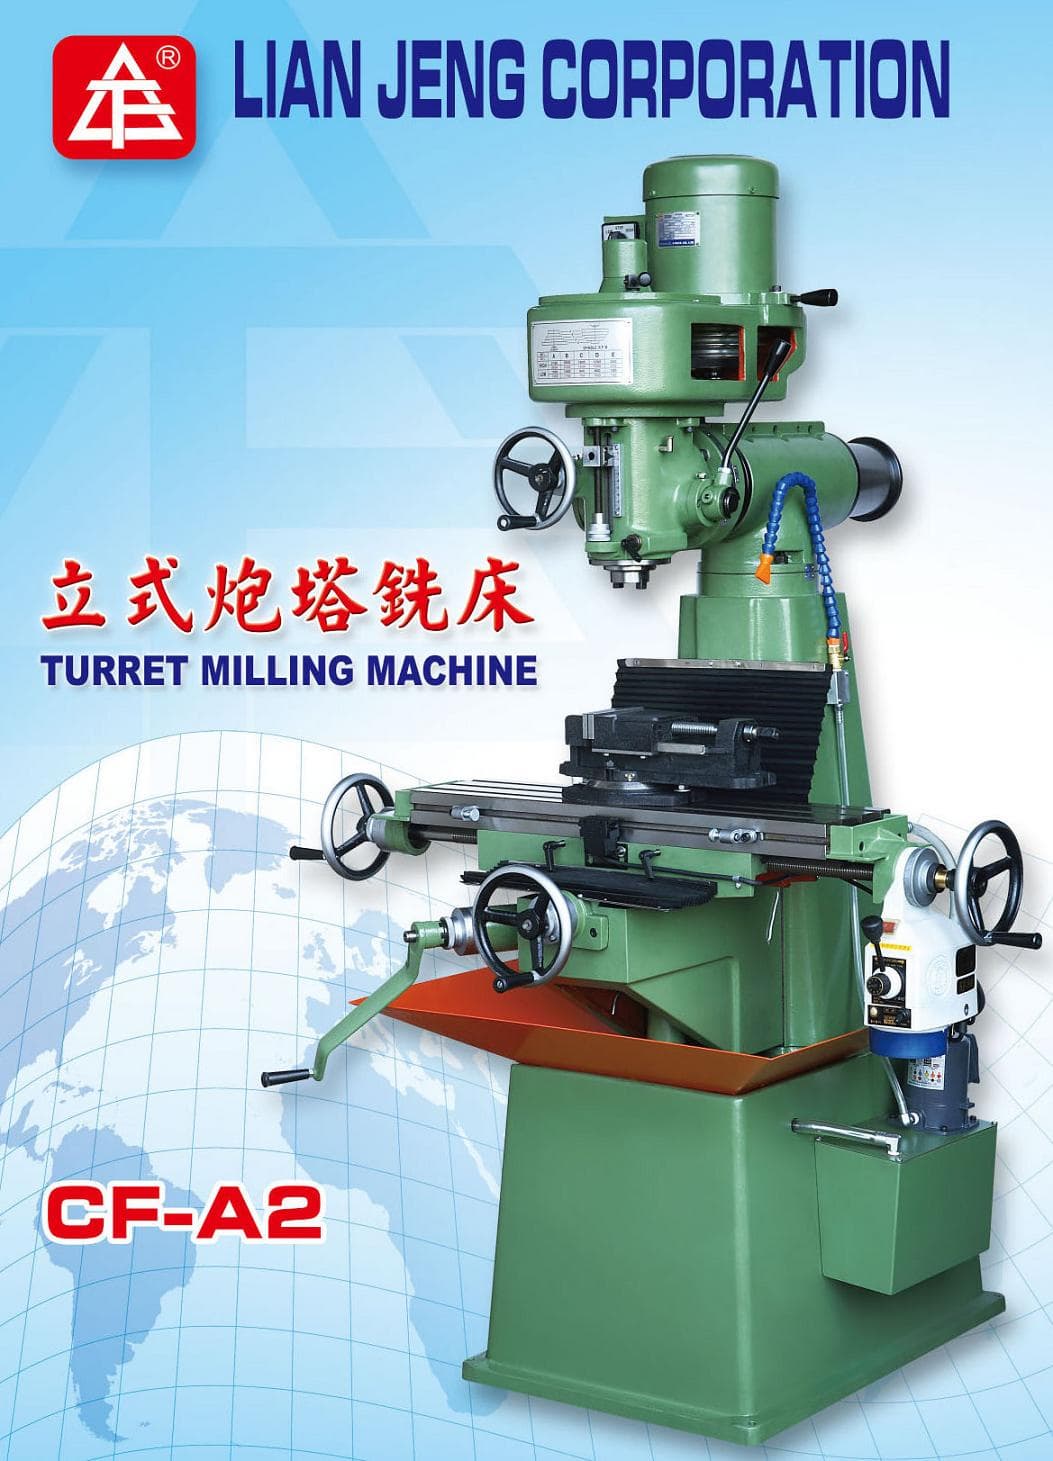 Vertical turret milling machine CF_A2